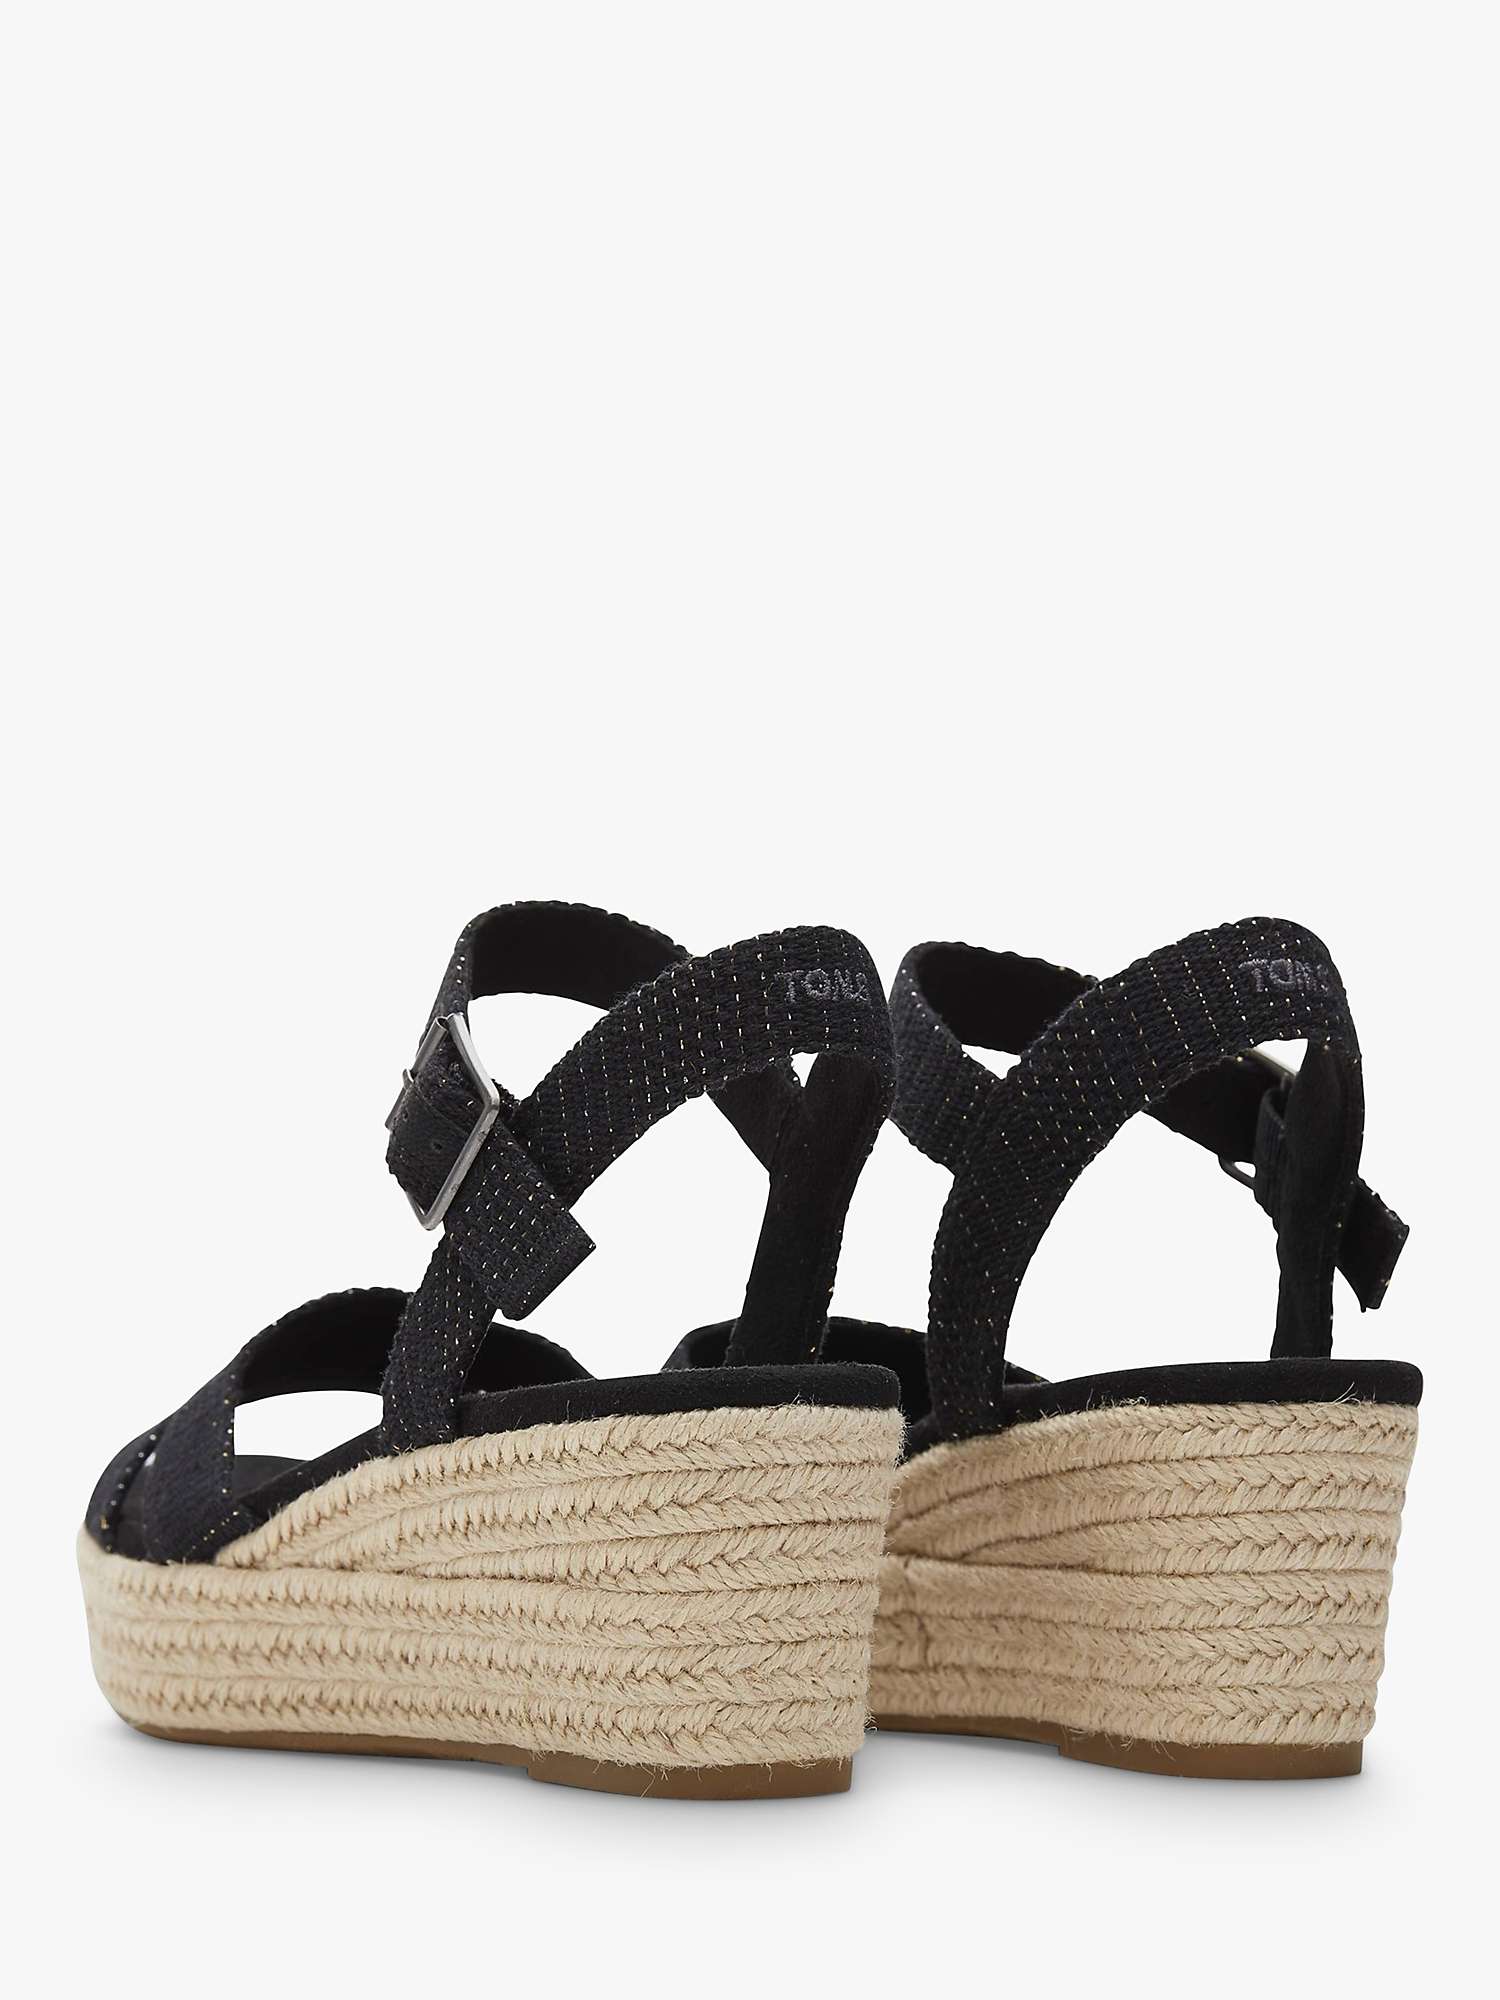 Buy TOMS Audrey Espadrille Wedge Sandals, Black Online at johnlewis.com